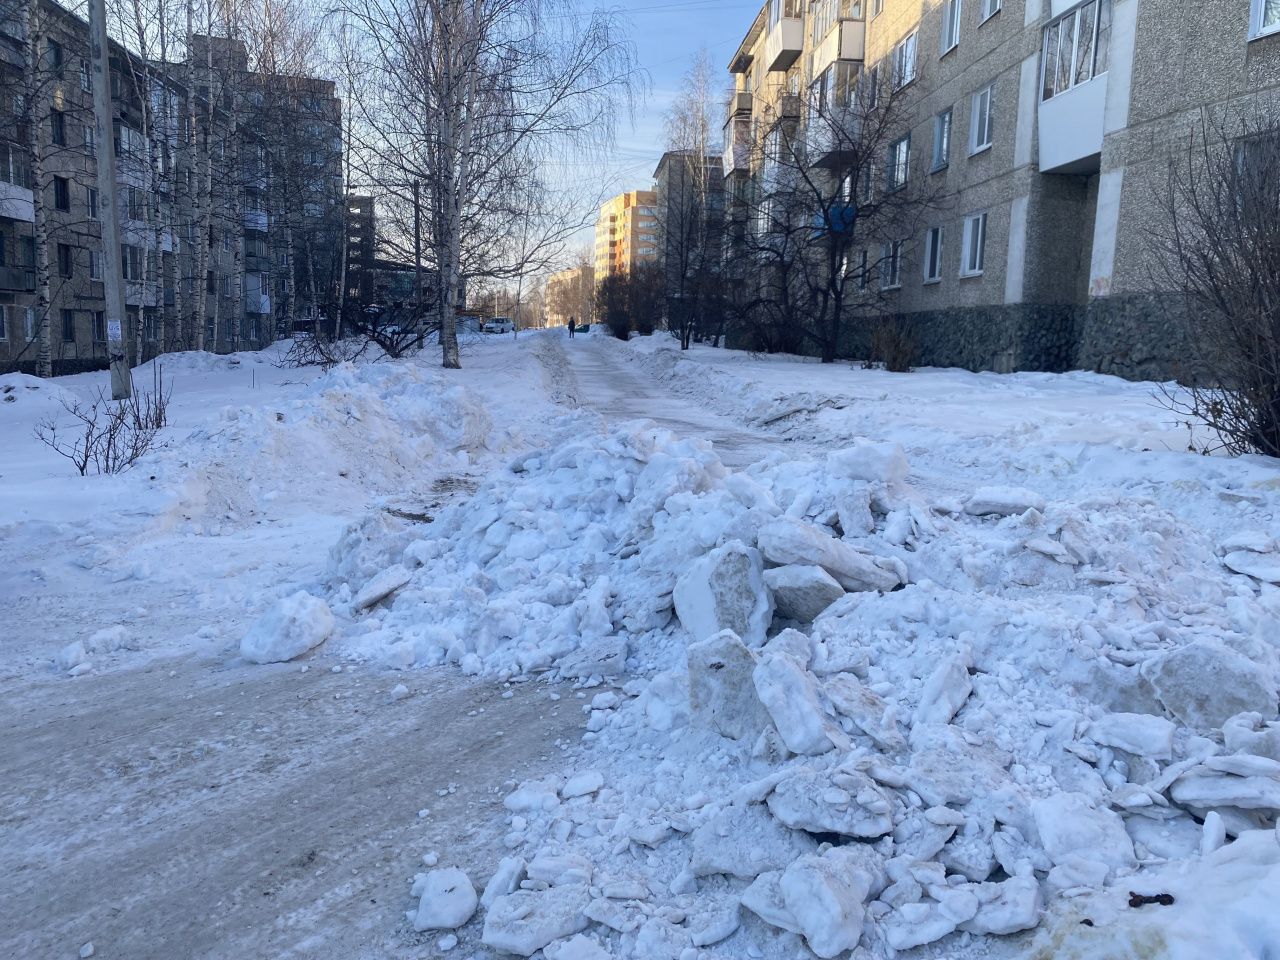 В Серове подходы к тротуару на «Сиреневом бульваре», по которому ездят автомобили, засыпали снегом